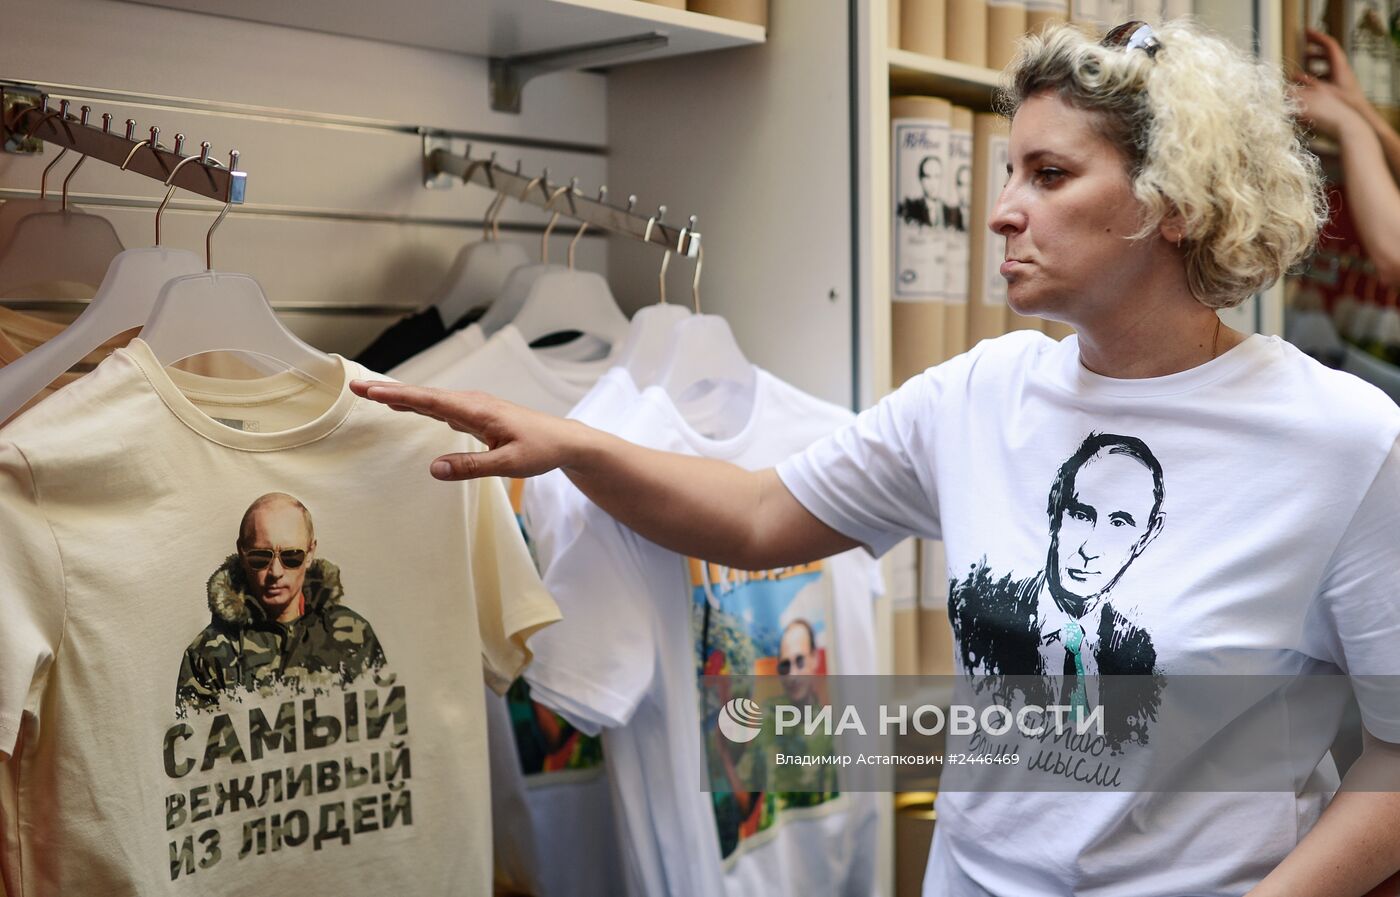 Футболки "Все путем" с изображением Путина поступили в продажу в Москве